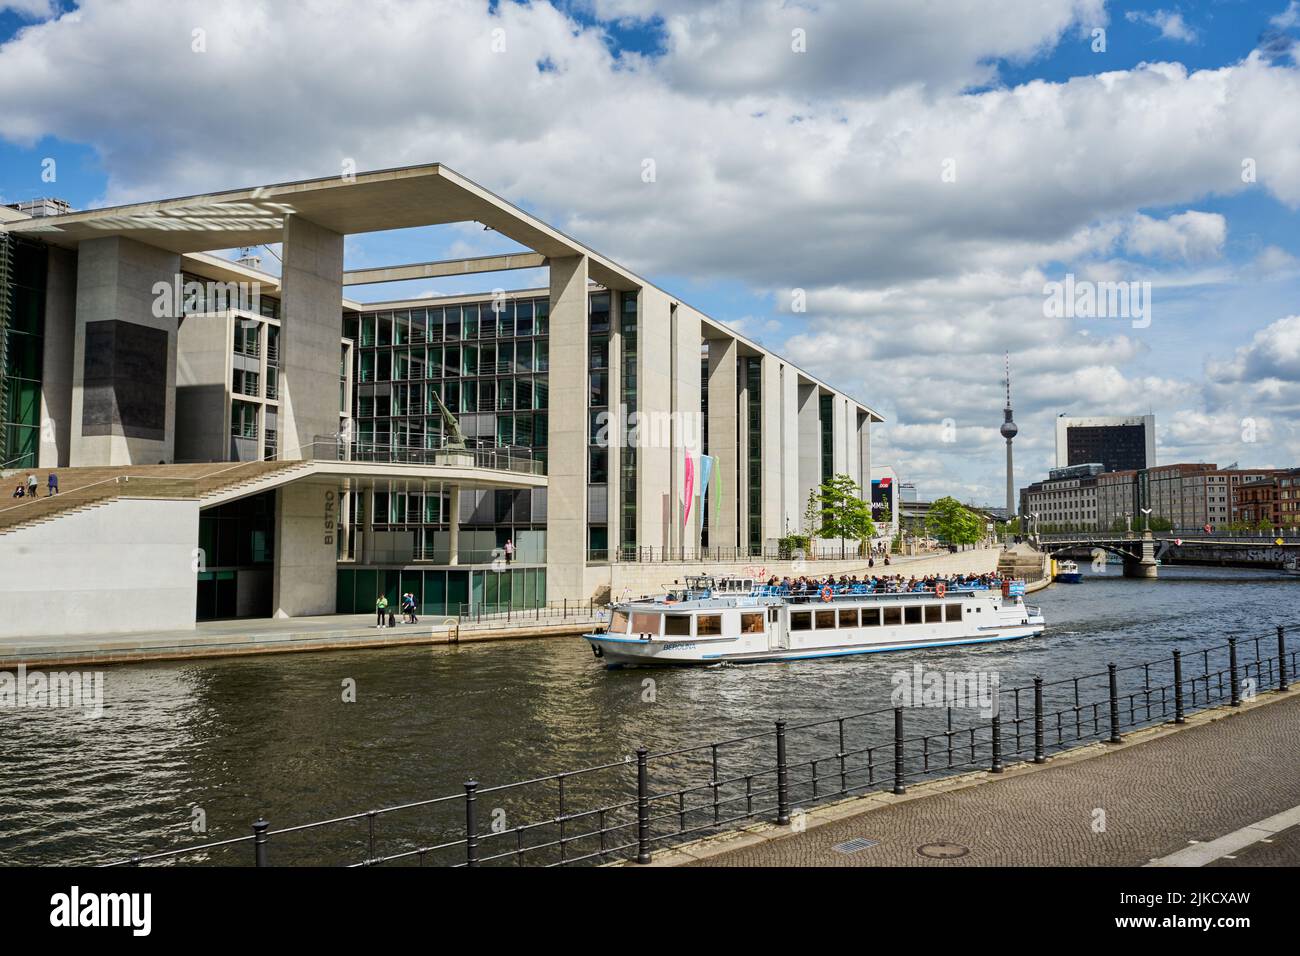 Marie-Elisabeth-Lüders-Haus vom Architekten Stephan Braunfels entworfen, vorne die Spree mit einem Ausflugsboot, Berlin Mitte, Berlin, Deutschland Foto de stock